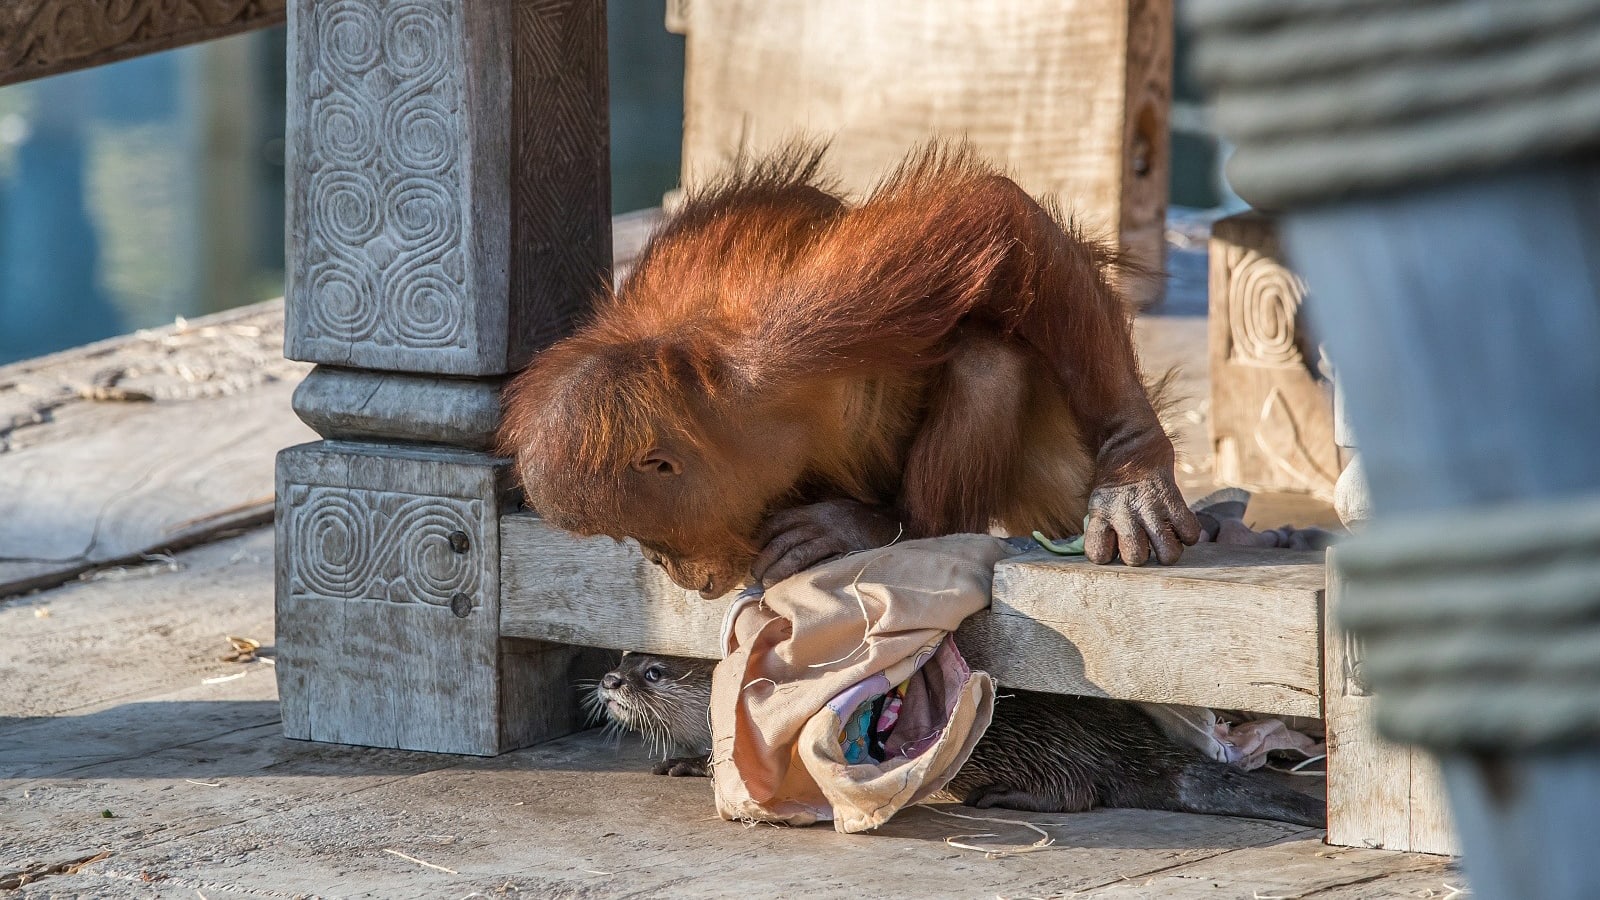 حديقة حيوانات تلتقط صور ظريفة لقردة أورانجوتان وهي تلعب مع أصدقائها القنادس